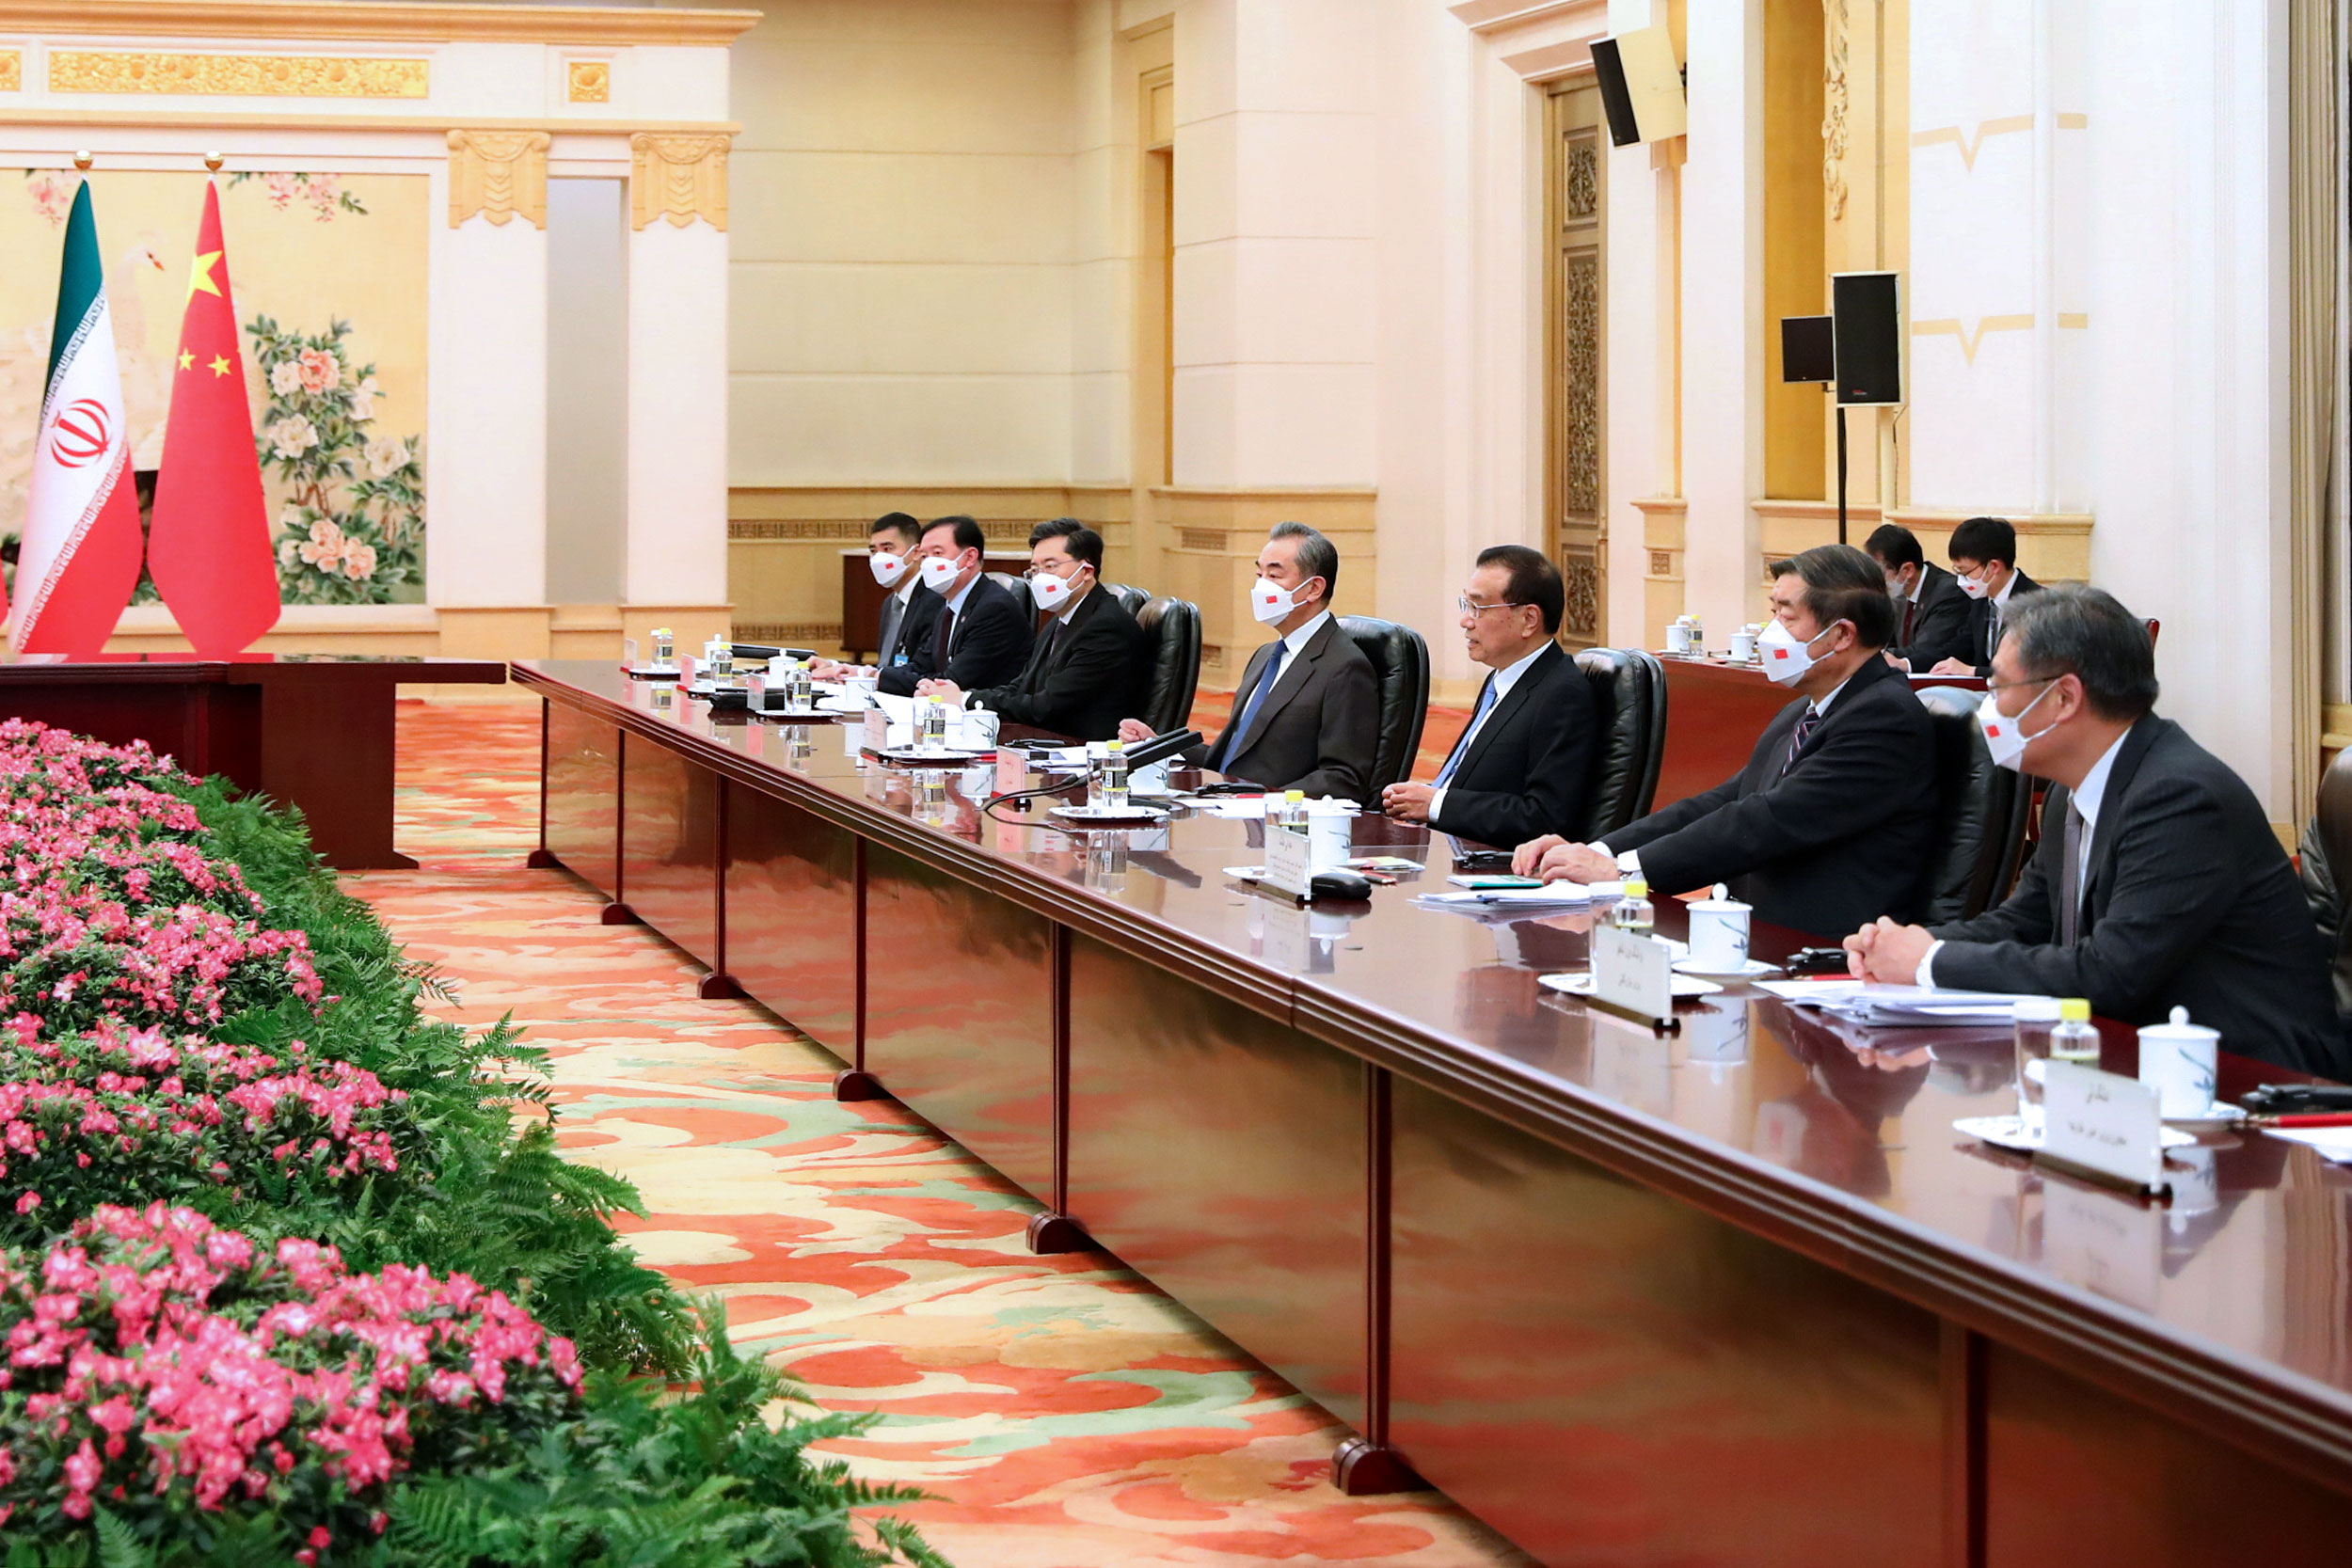 جلسه مهم رییس جمهور با مدیران شرکت های بزرگ تجاری در پکن